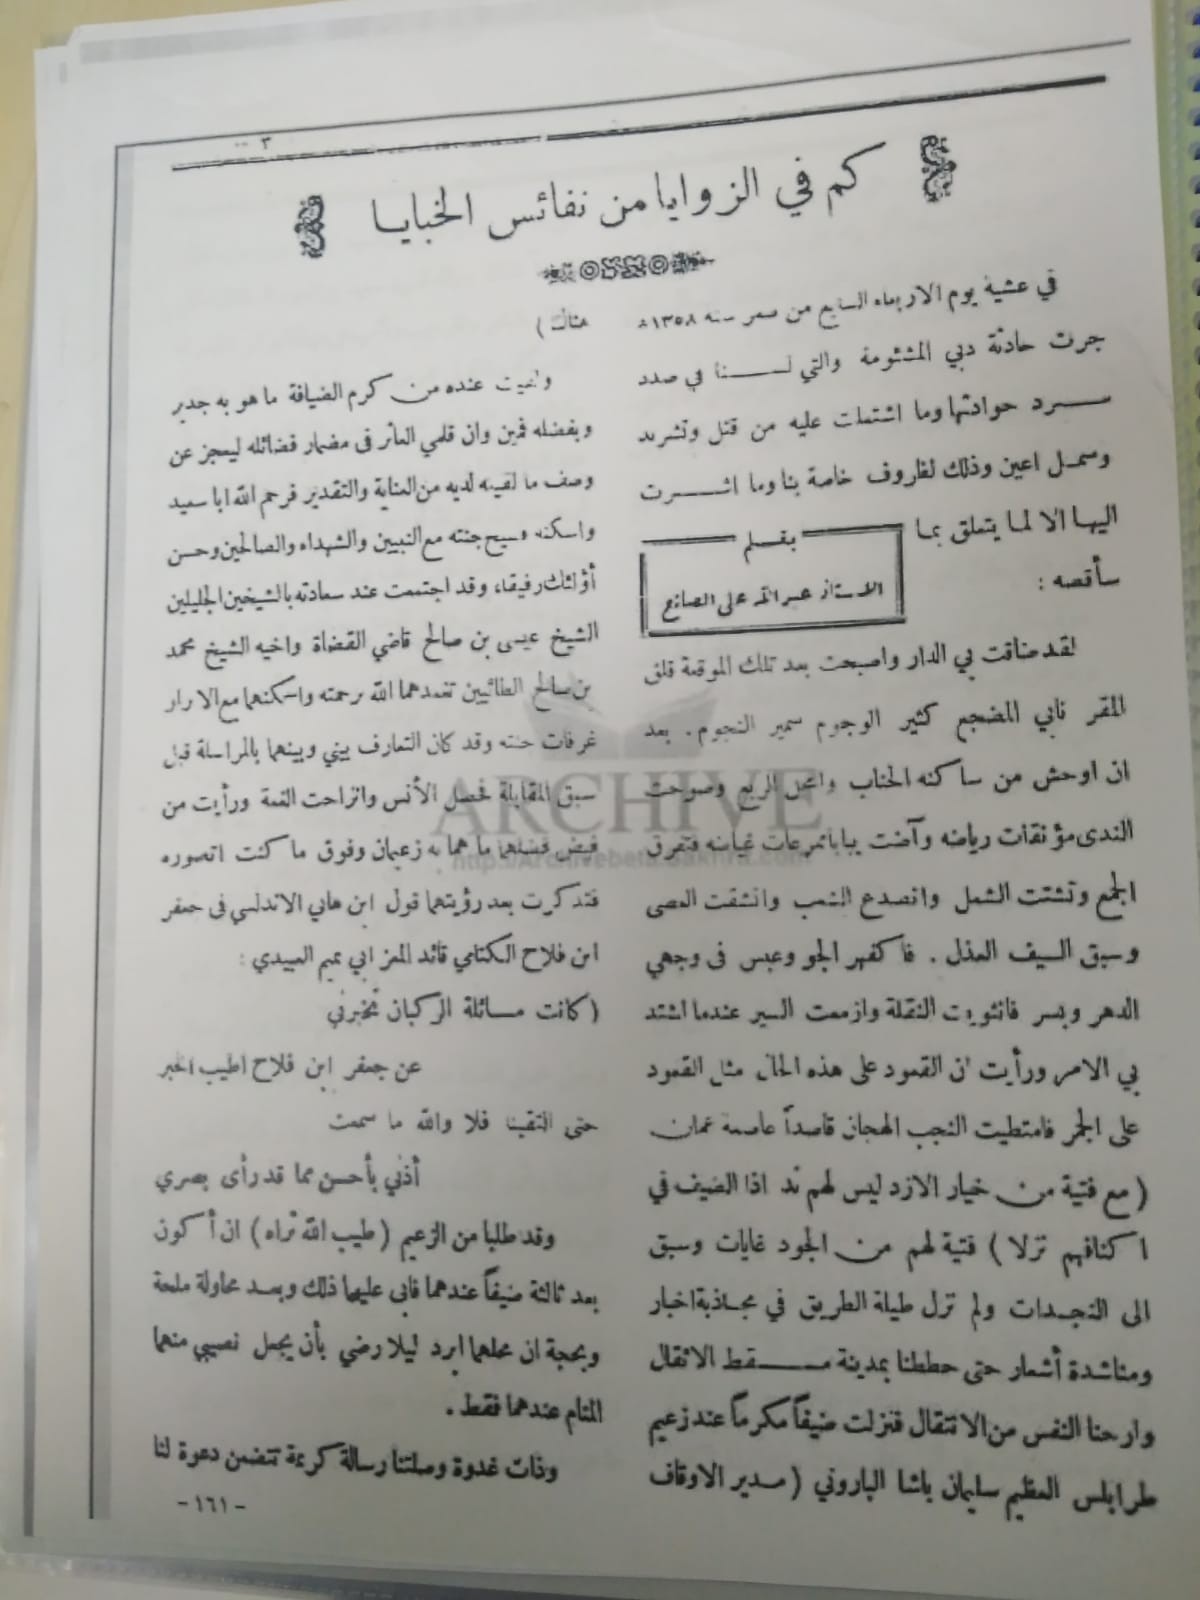 مجلة كاظمة ومقالة عن الشيخ عيسى وأخيه محمد.jfif